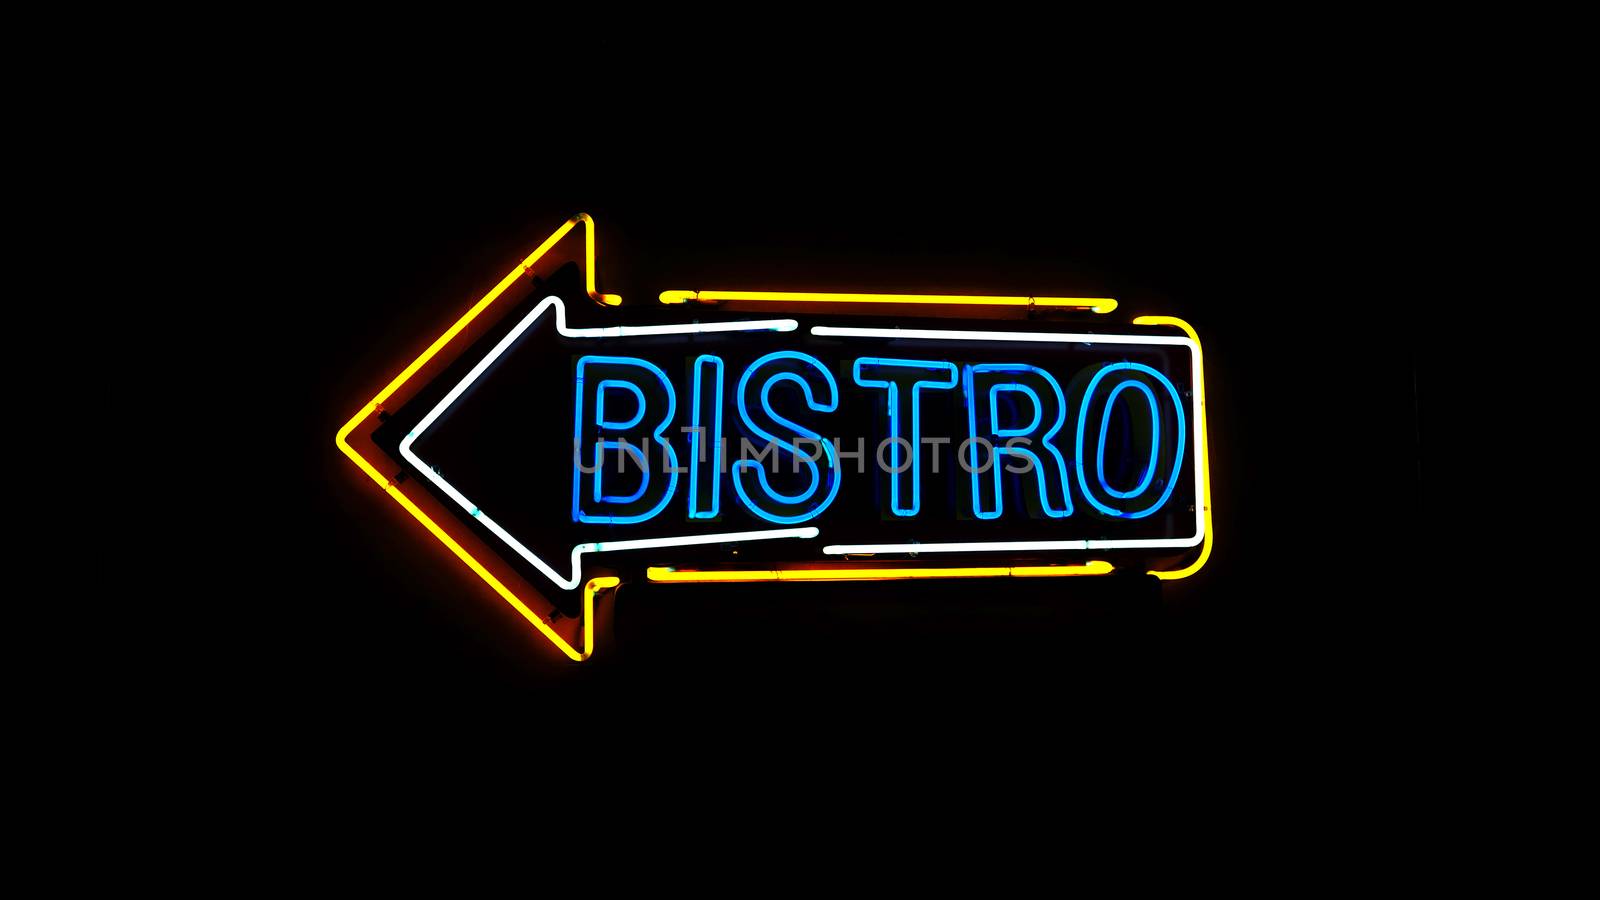 Bistro neon sign. by gnepphoto